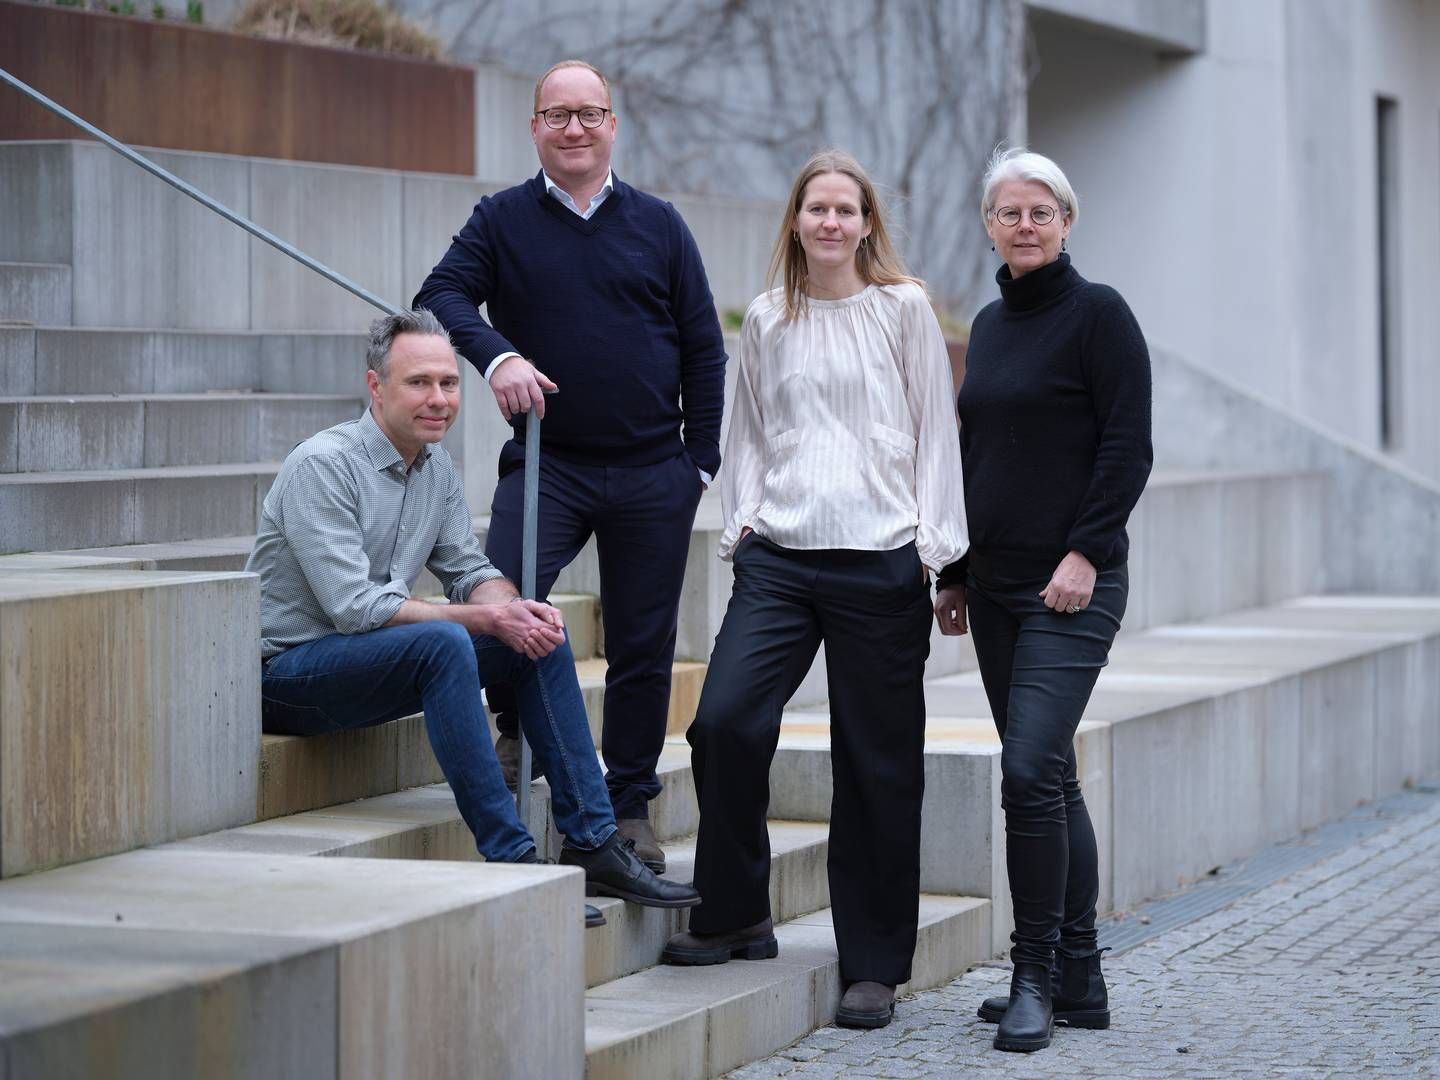 Ejerkredsen hos Energi & Miljø består nu af advokaterne (fra venstre) Asger Janfelt, Peter Nymann, Malene Blom Sillesen og Pernille Aagaard Truelsen. | Foto: PR